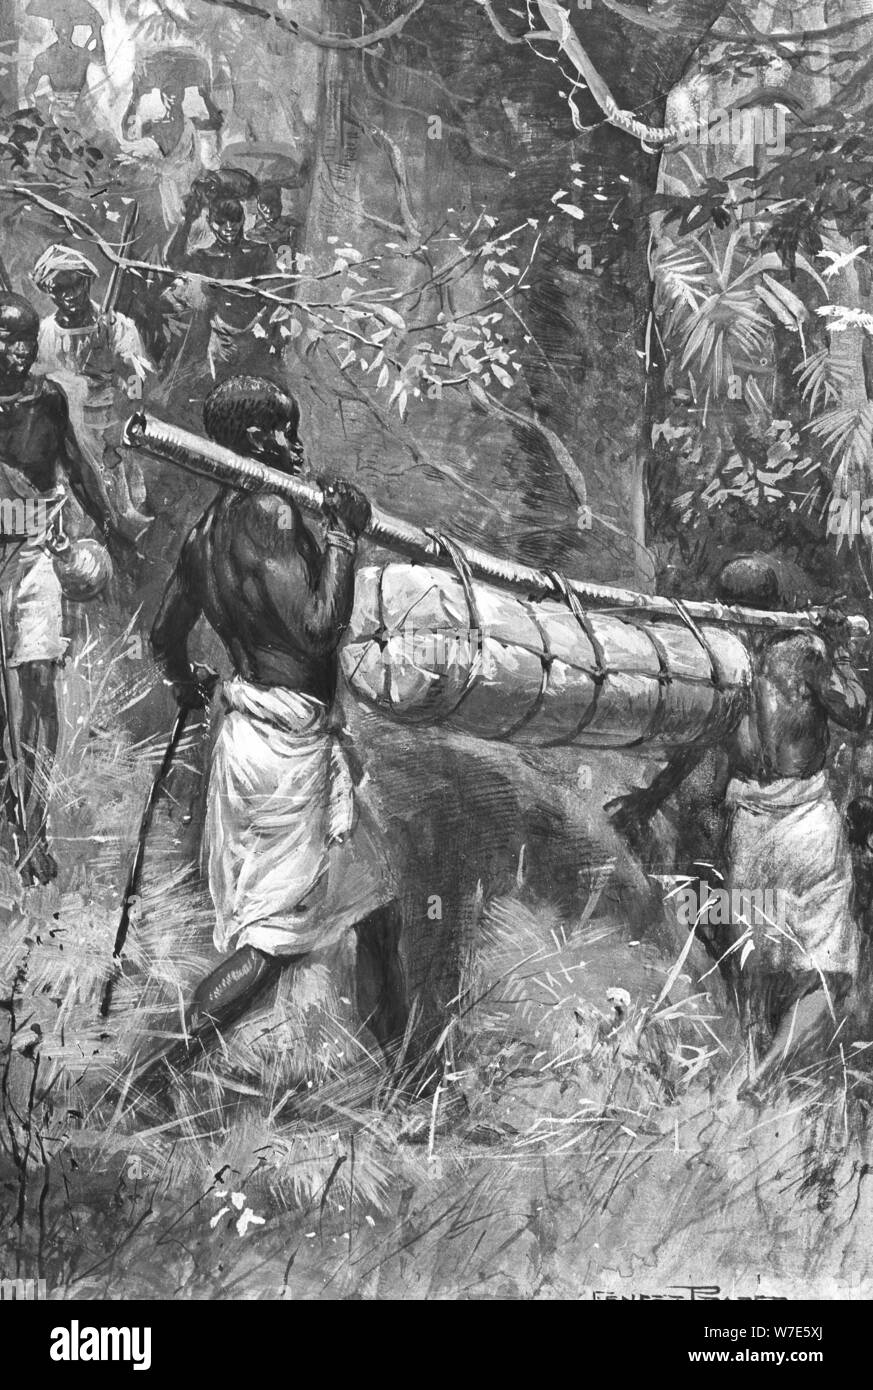 Ce qui porte le corps de David Livingstone jusqu'à la côte, de l'Afrique, 1873. Artiste : Inconnu Banque D'Images